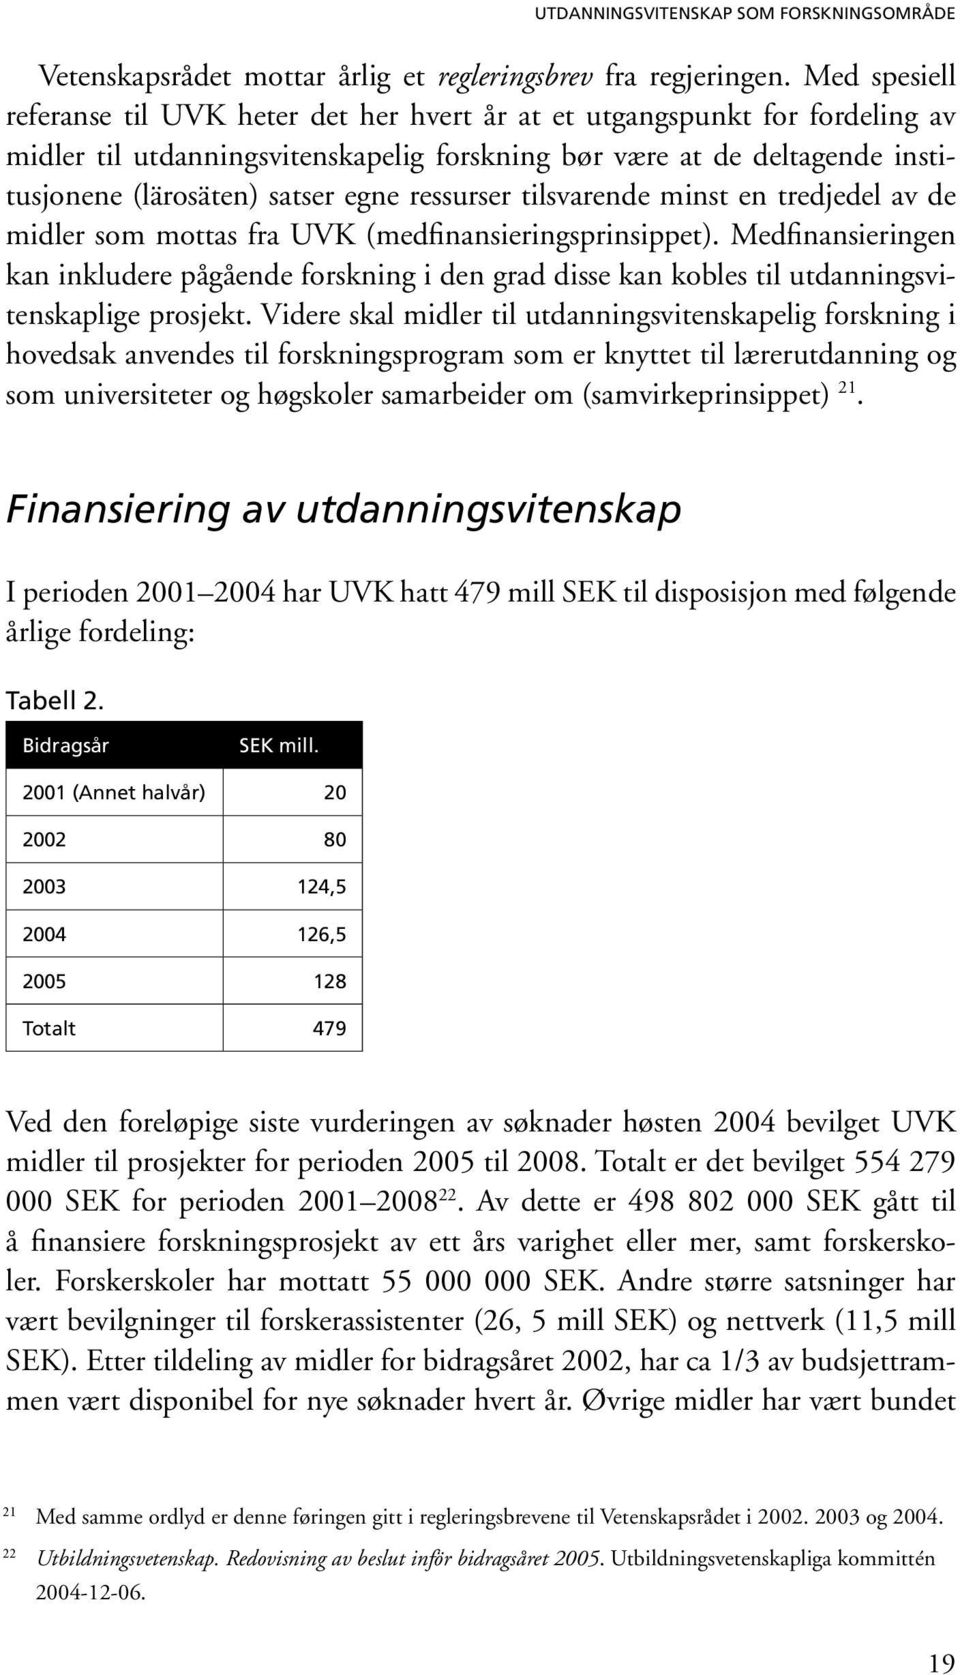 ressurser tilsvarende minst en tredjedel av de midler som mottas fra UVK (medfinansieringsprinsippet).